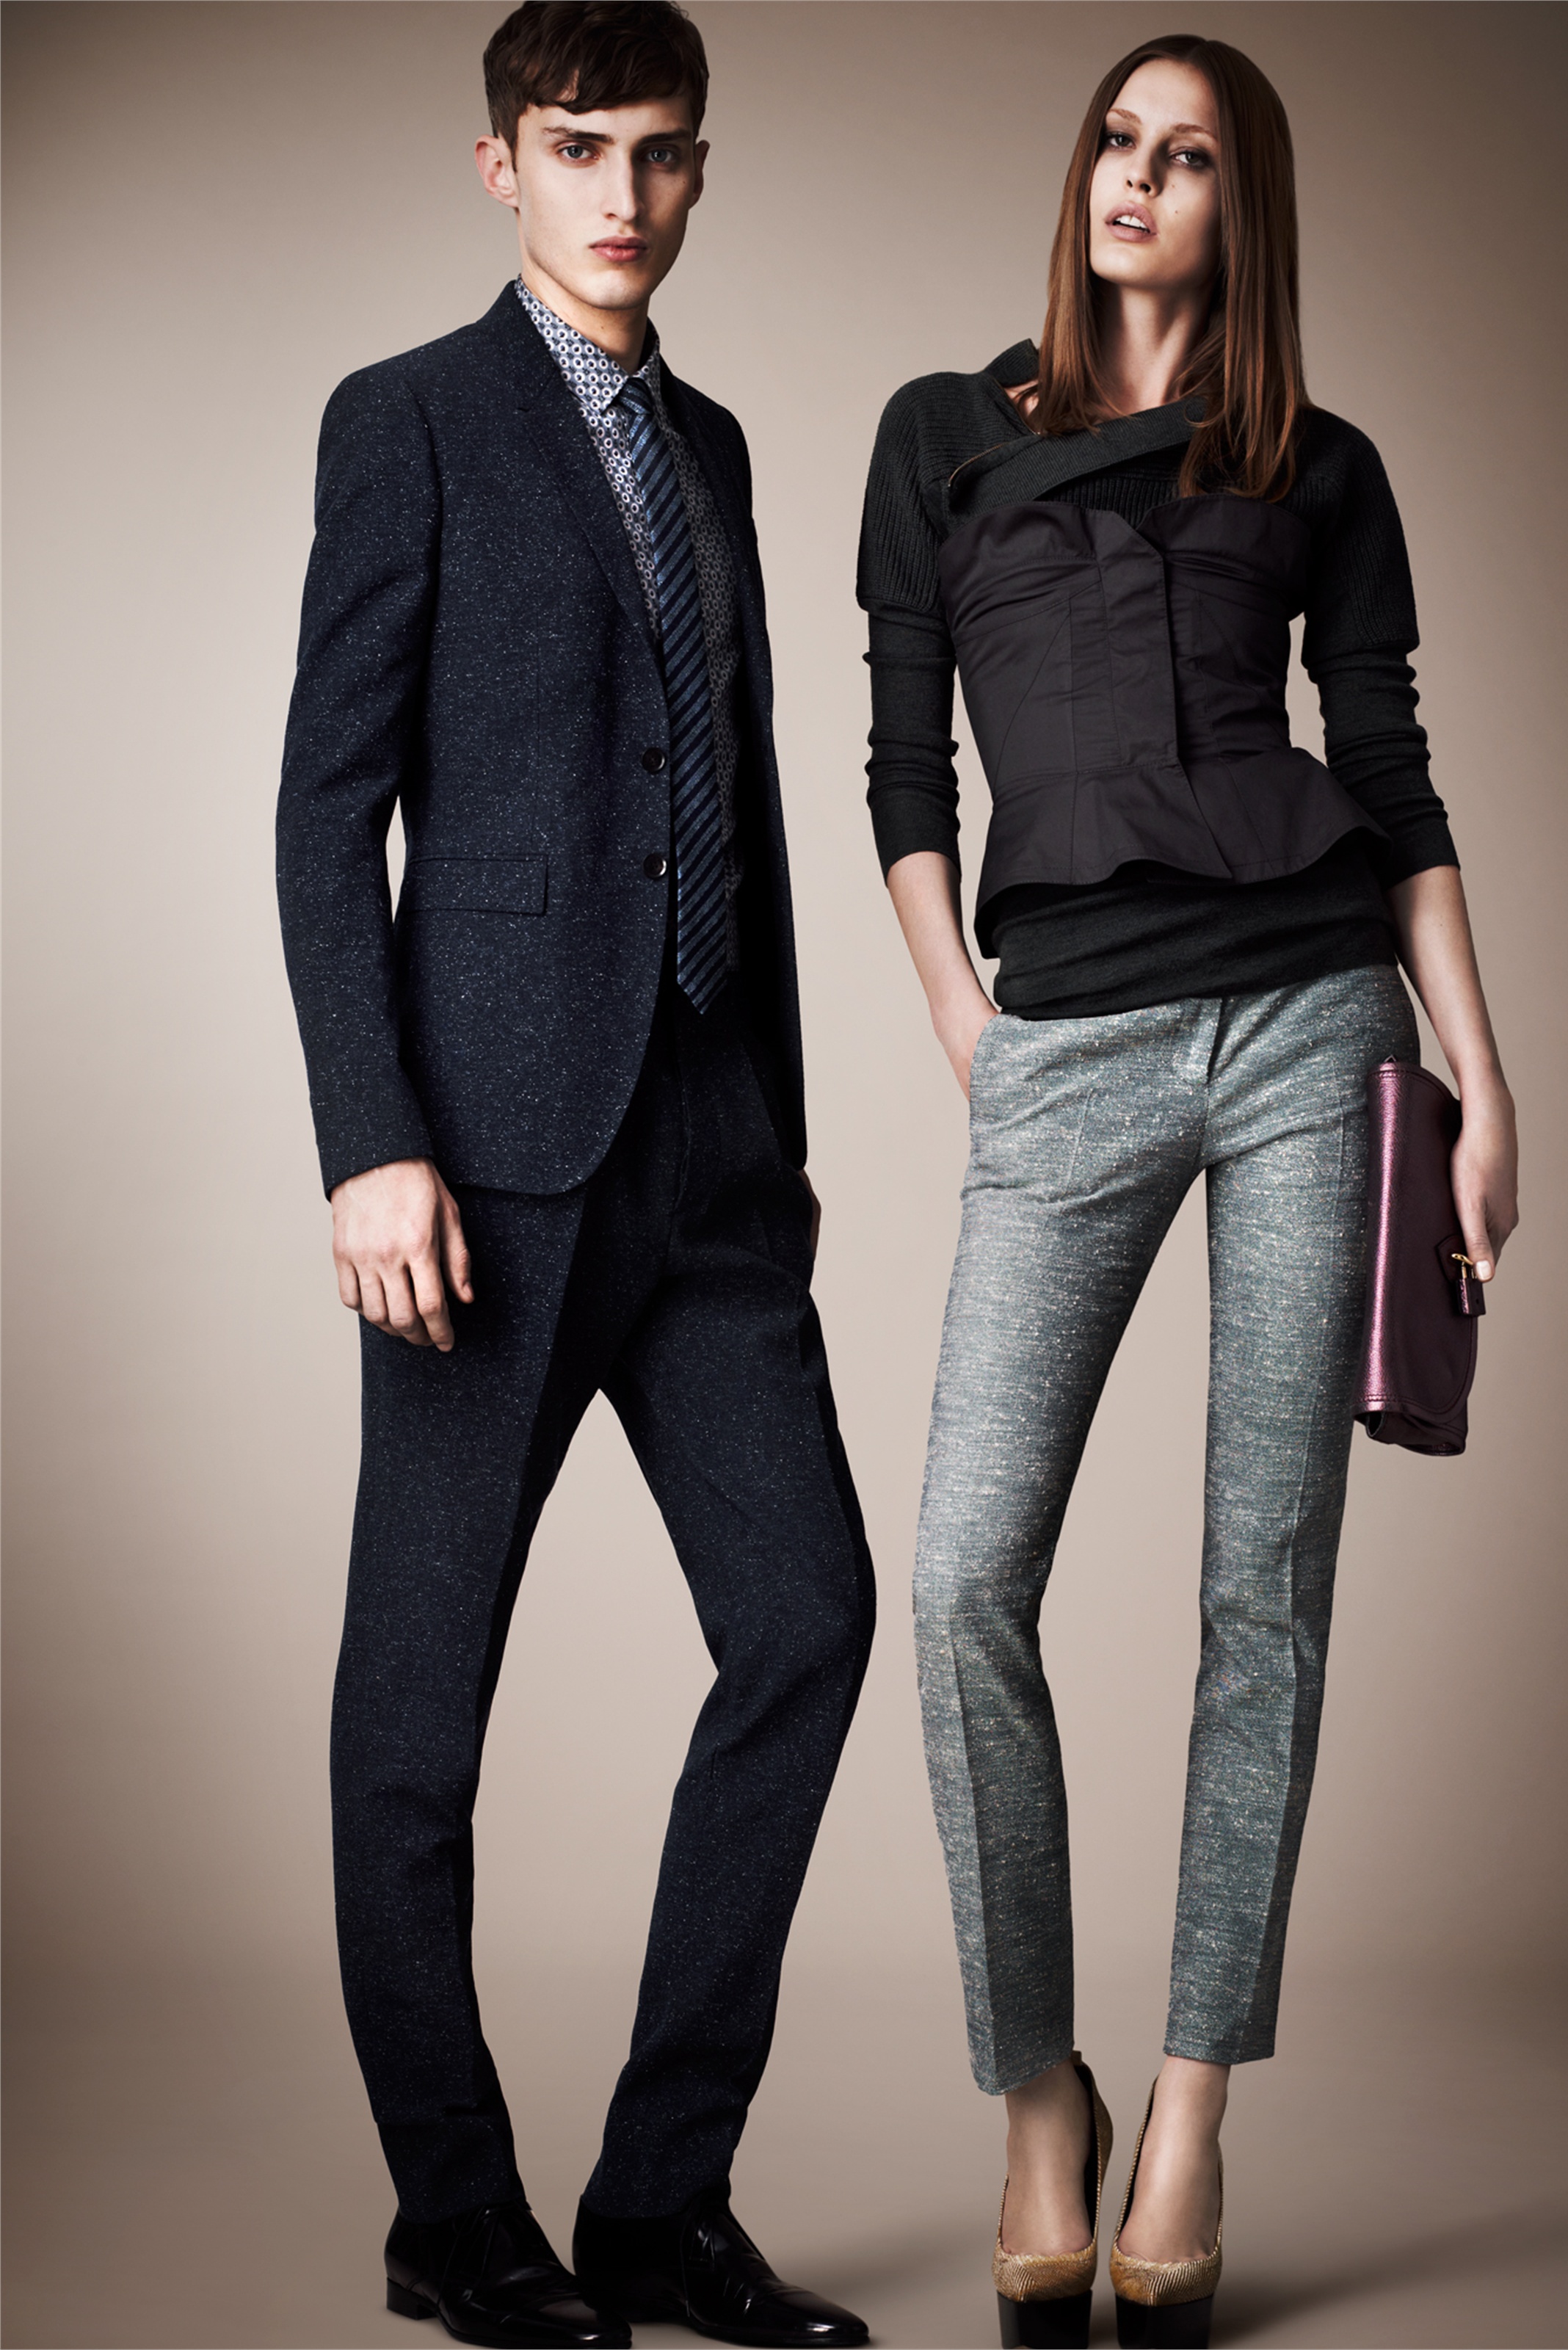 Фото высокого парня. Burberry Prorsum коллекция 2013. Современный стиль одежды. Современная стильная одежда. Женская и мужская одежда классика.